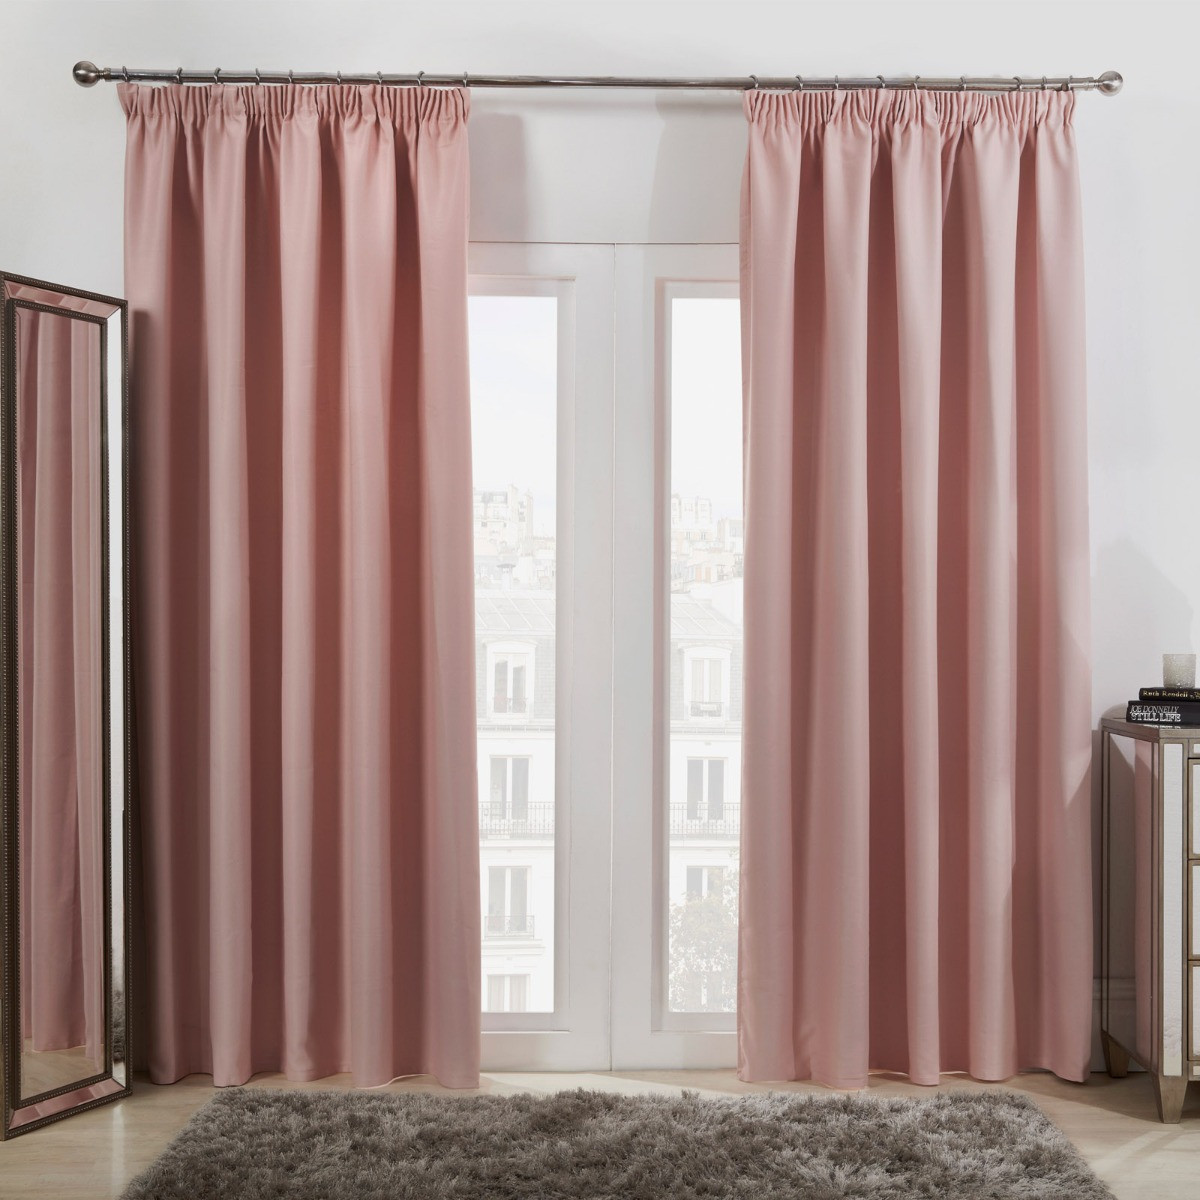 Dreamscene Pencil Pleat Blackout Curtains - Blush Pink, 46" x 54">